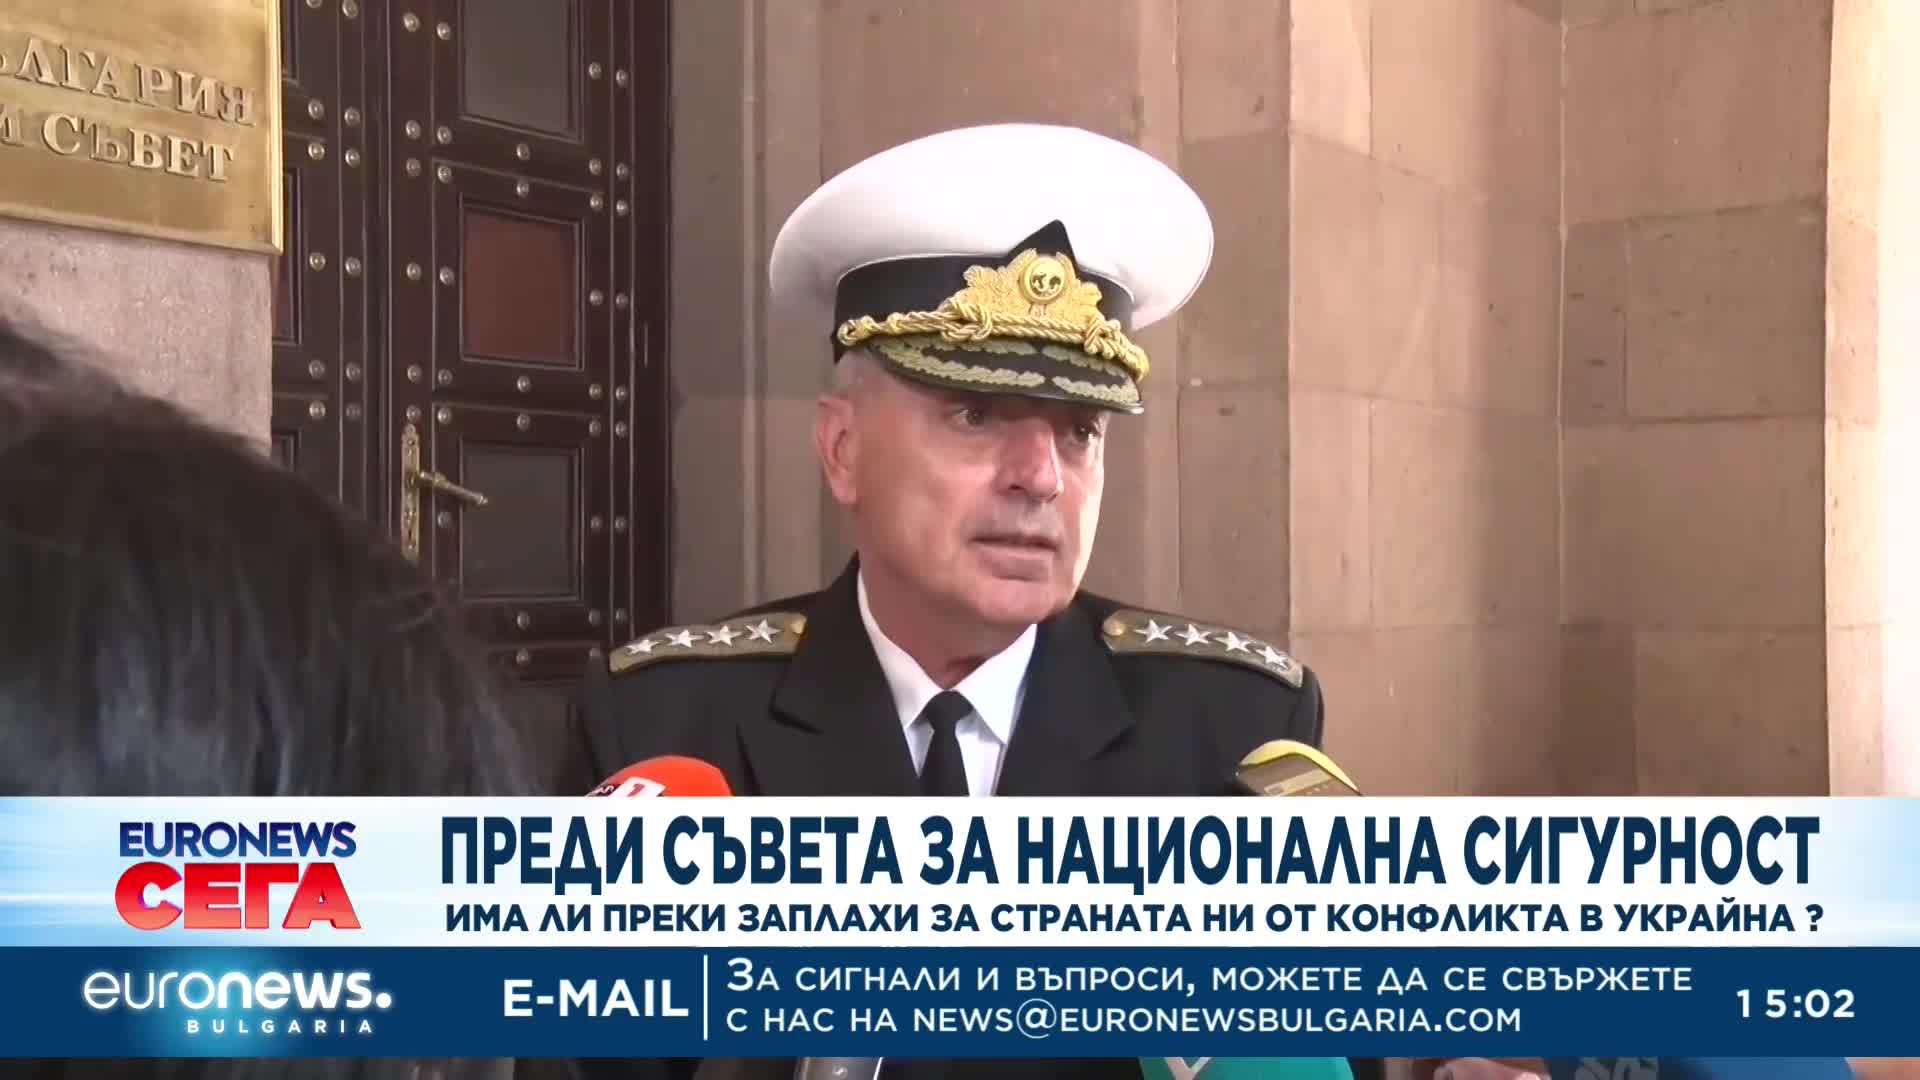 Началникът на отбраната: Към момента няма пряка военна заплаха към България